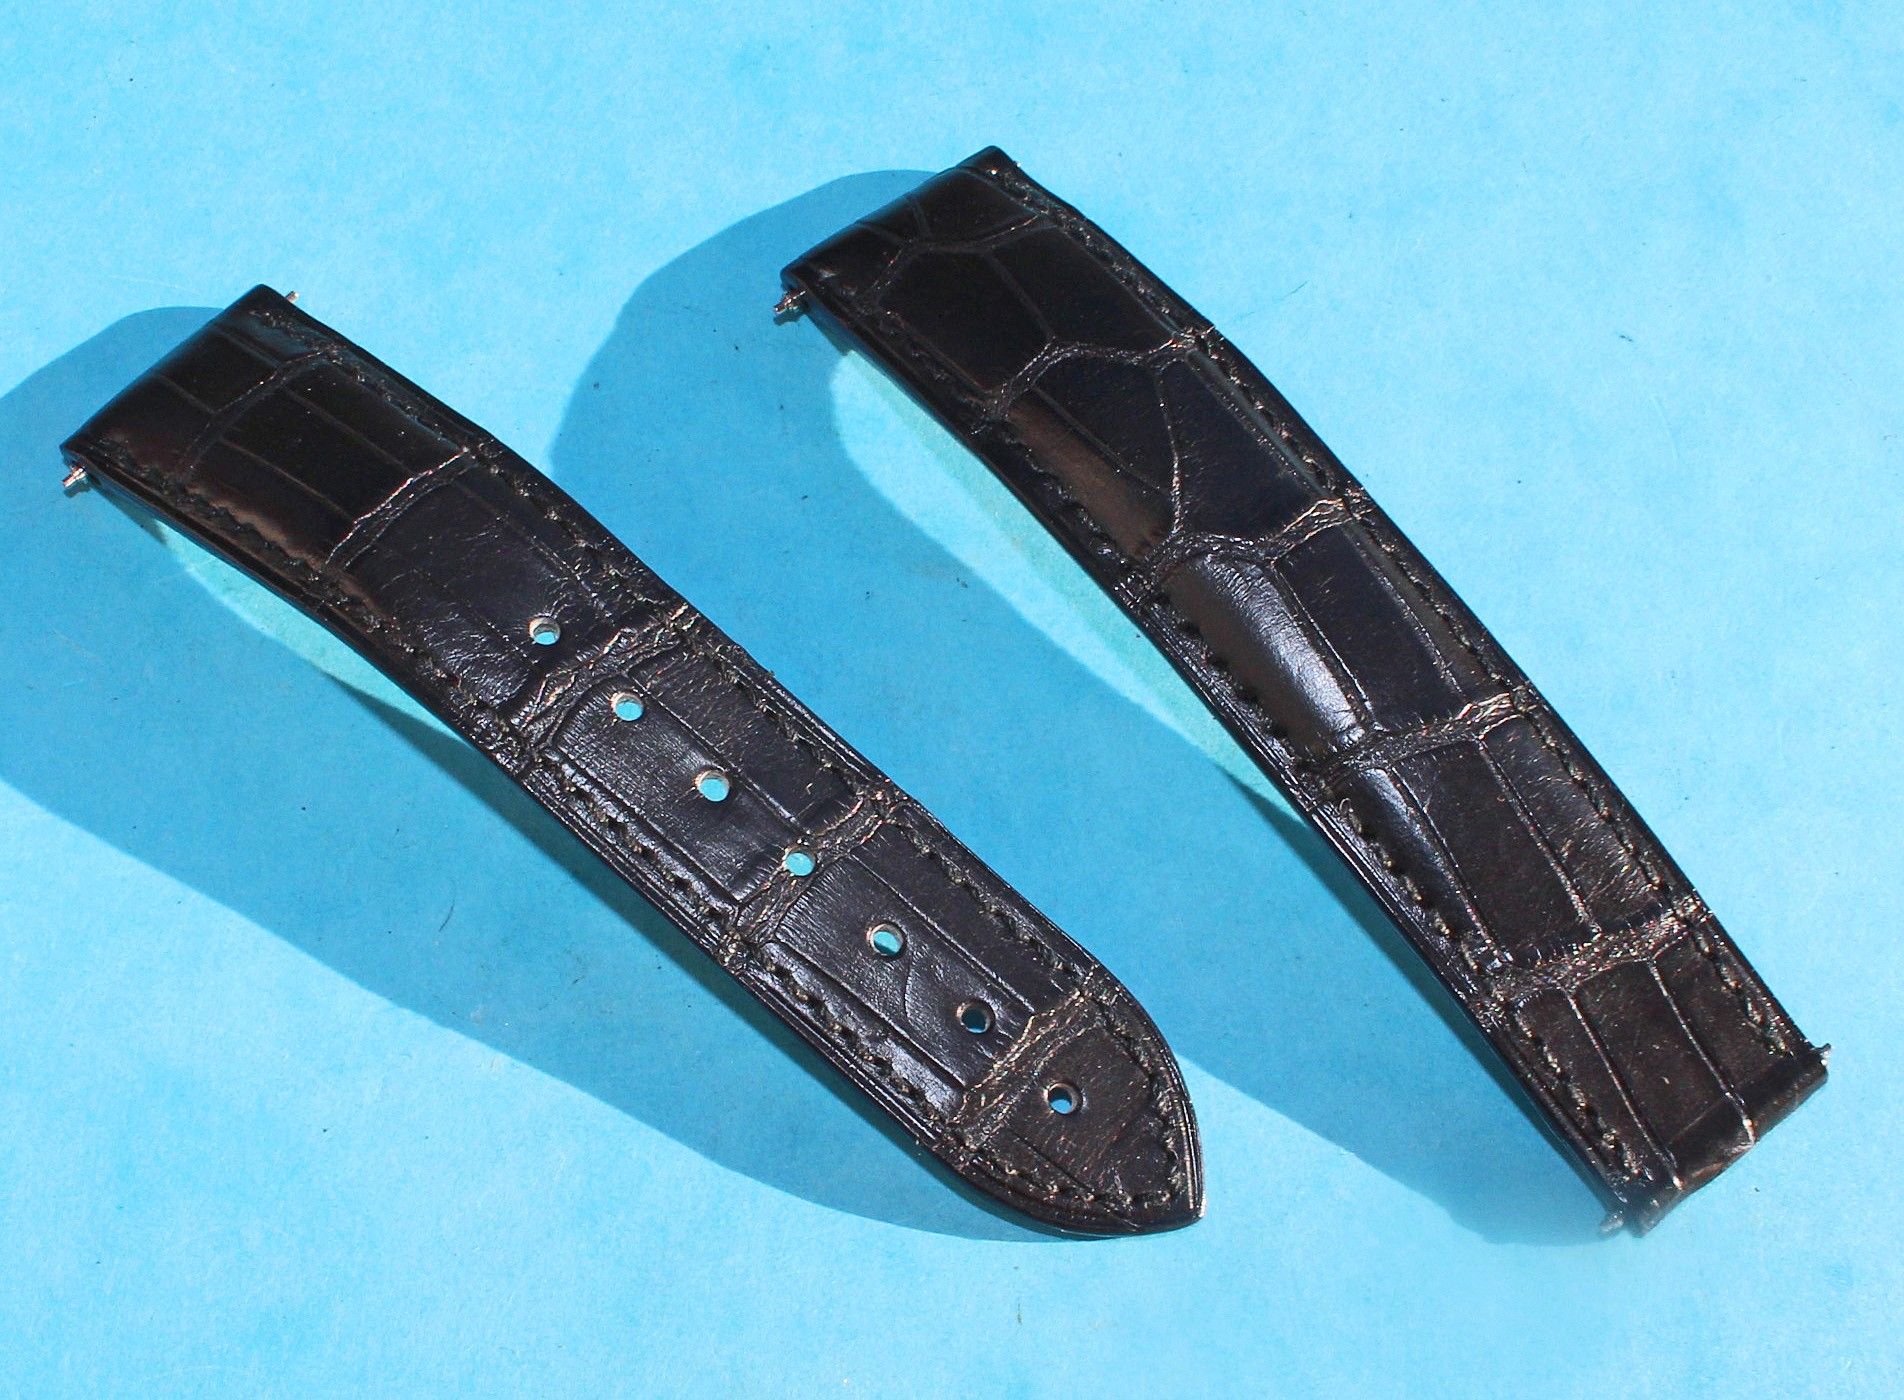 original omega straps